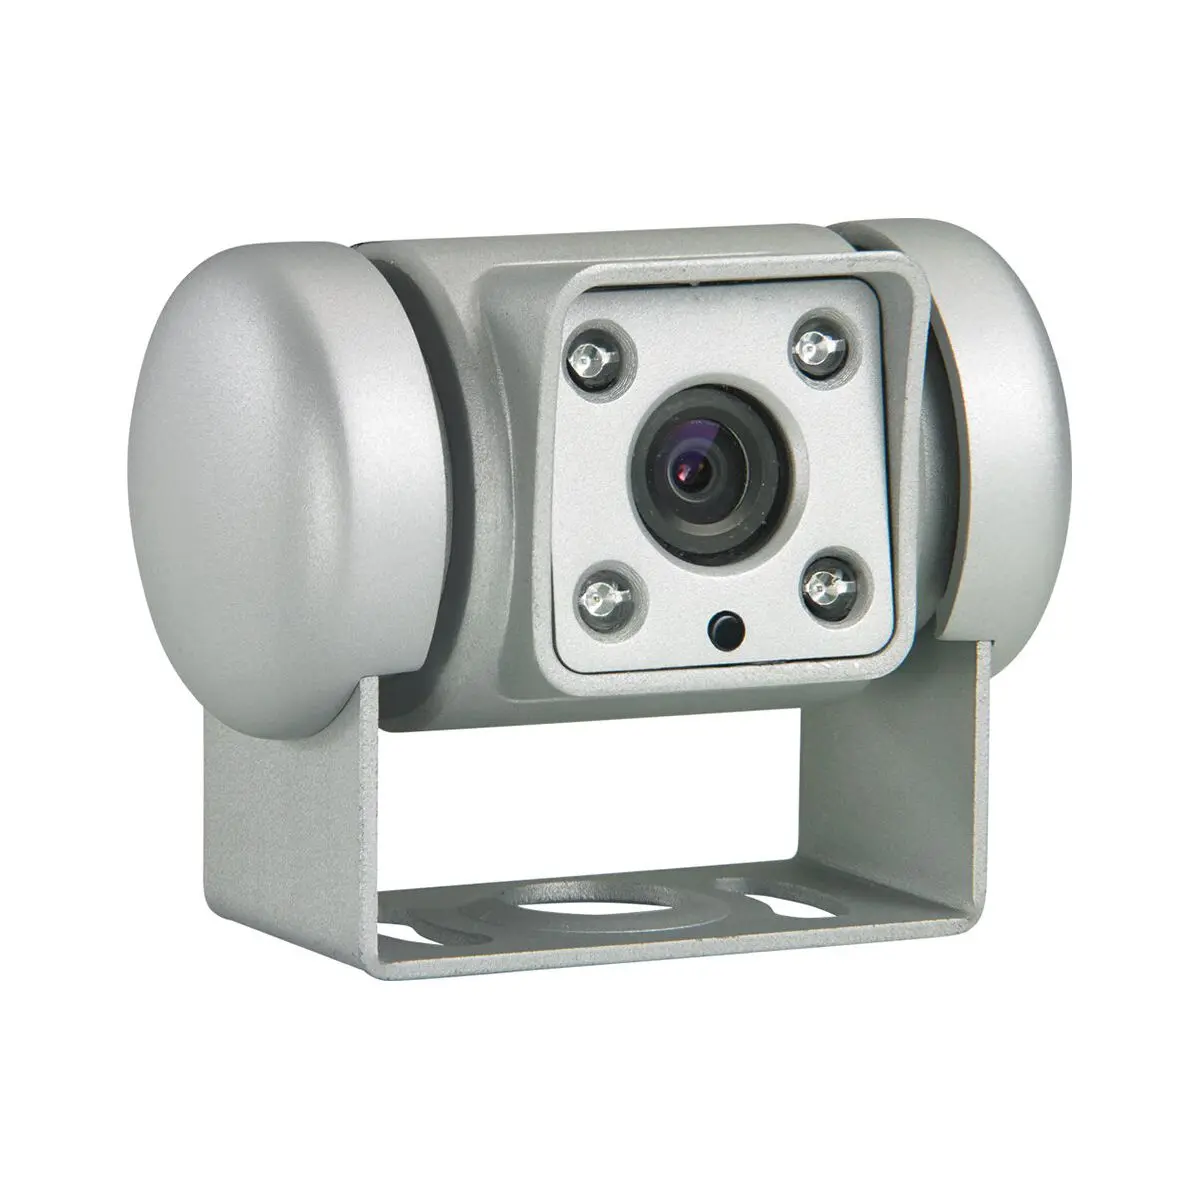 Zadná kamera Dometic PerfectView CAM 45 NAV pre navigačné systémy, strieborná